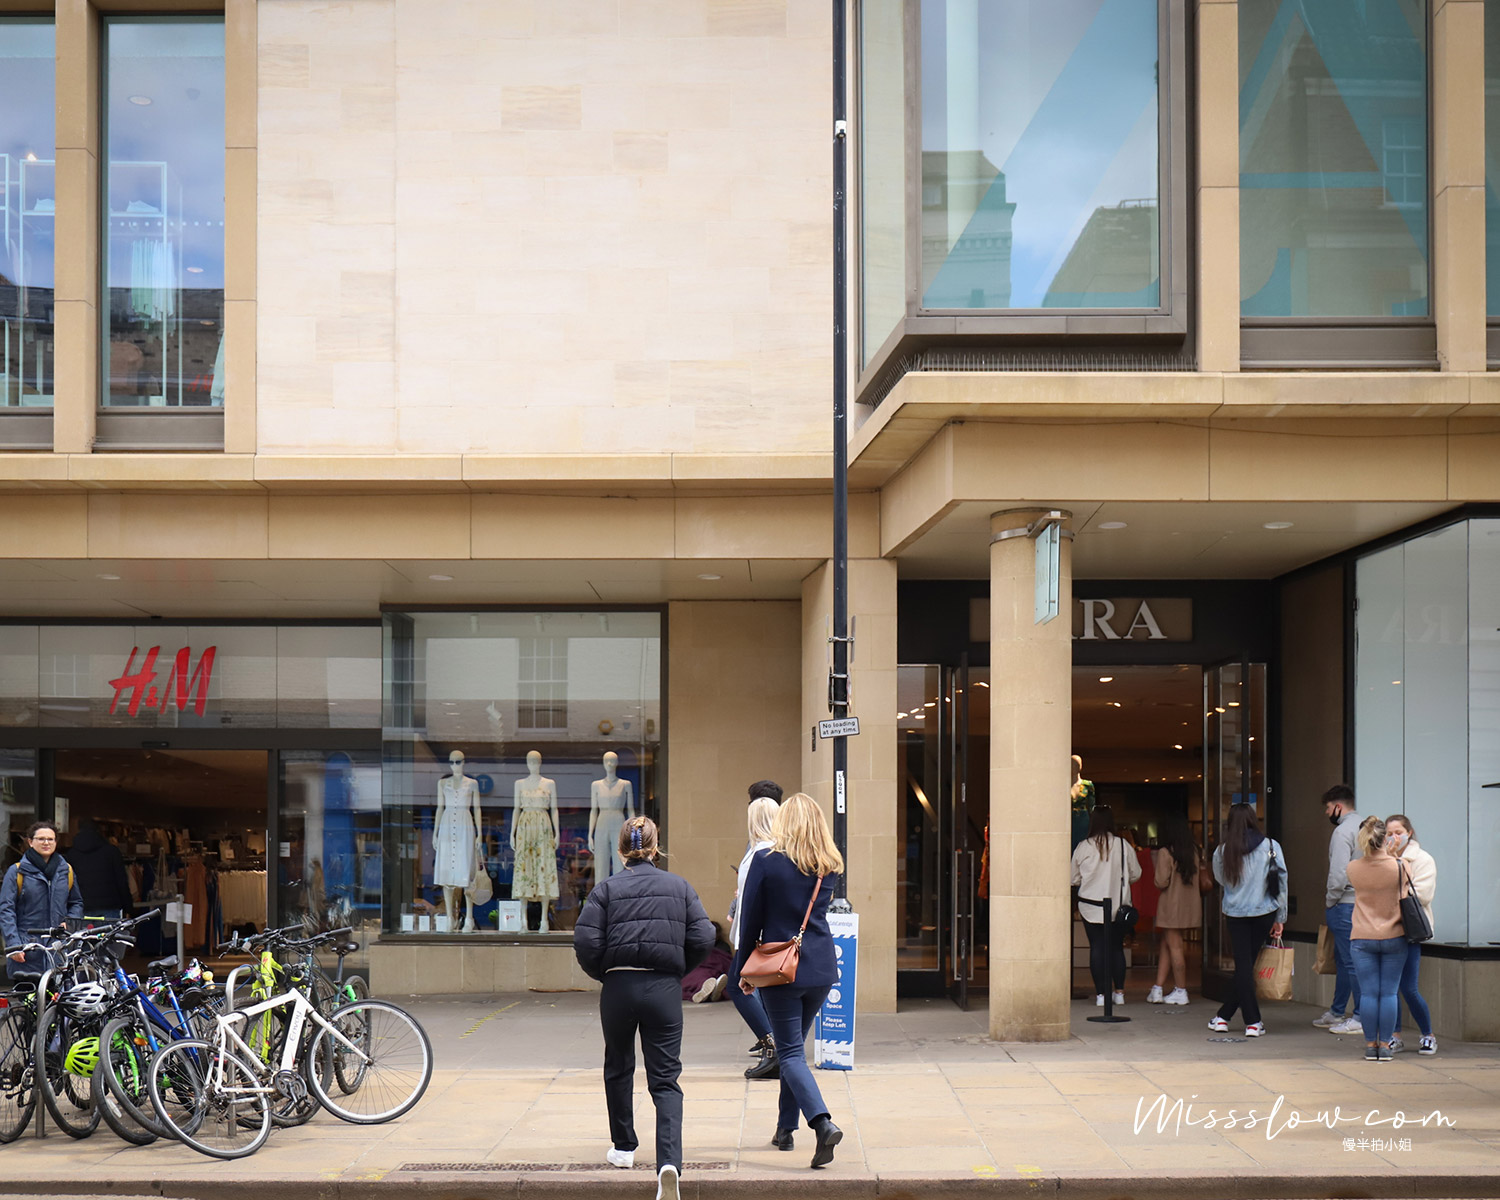 很多商店都聚集在ST ANDREW'S STREET，感覺消費者都是劍橋學生呀，都好年輕